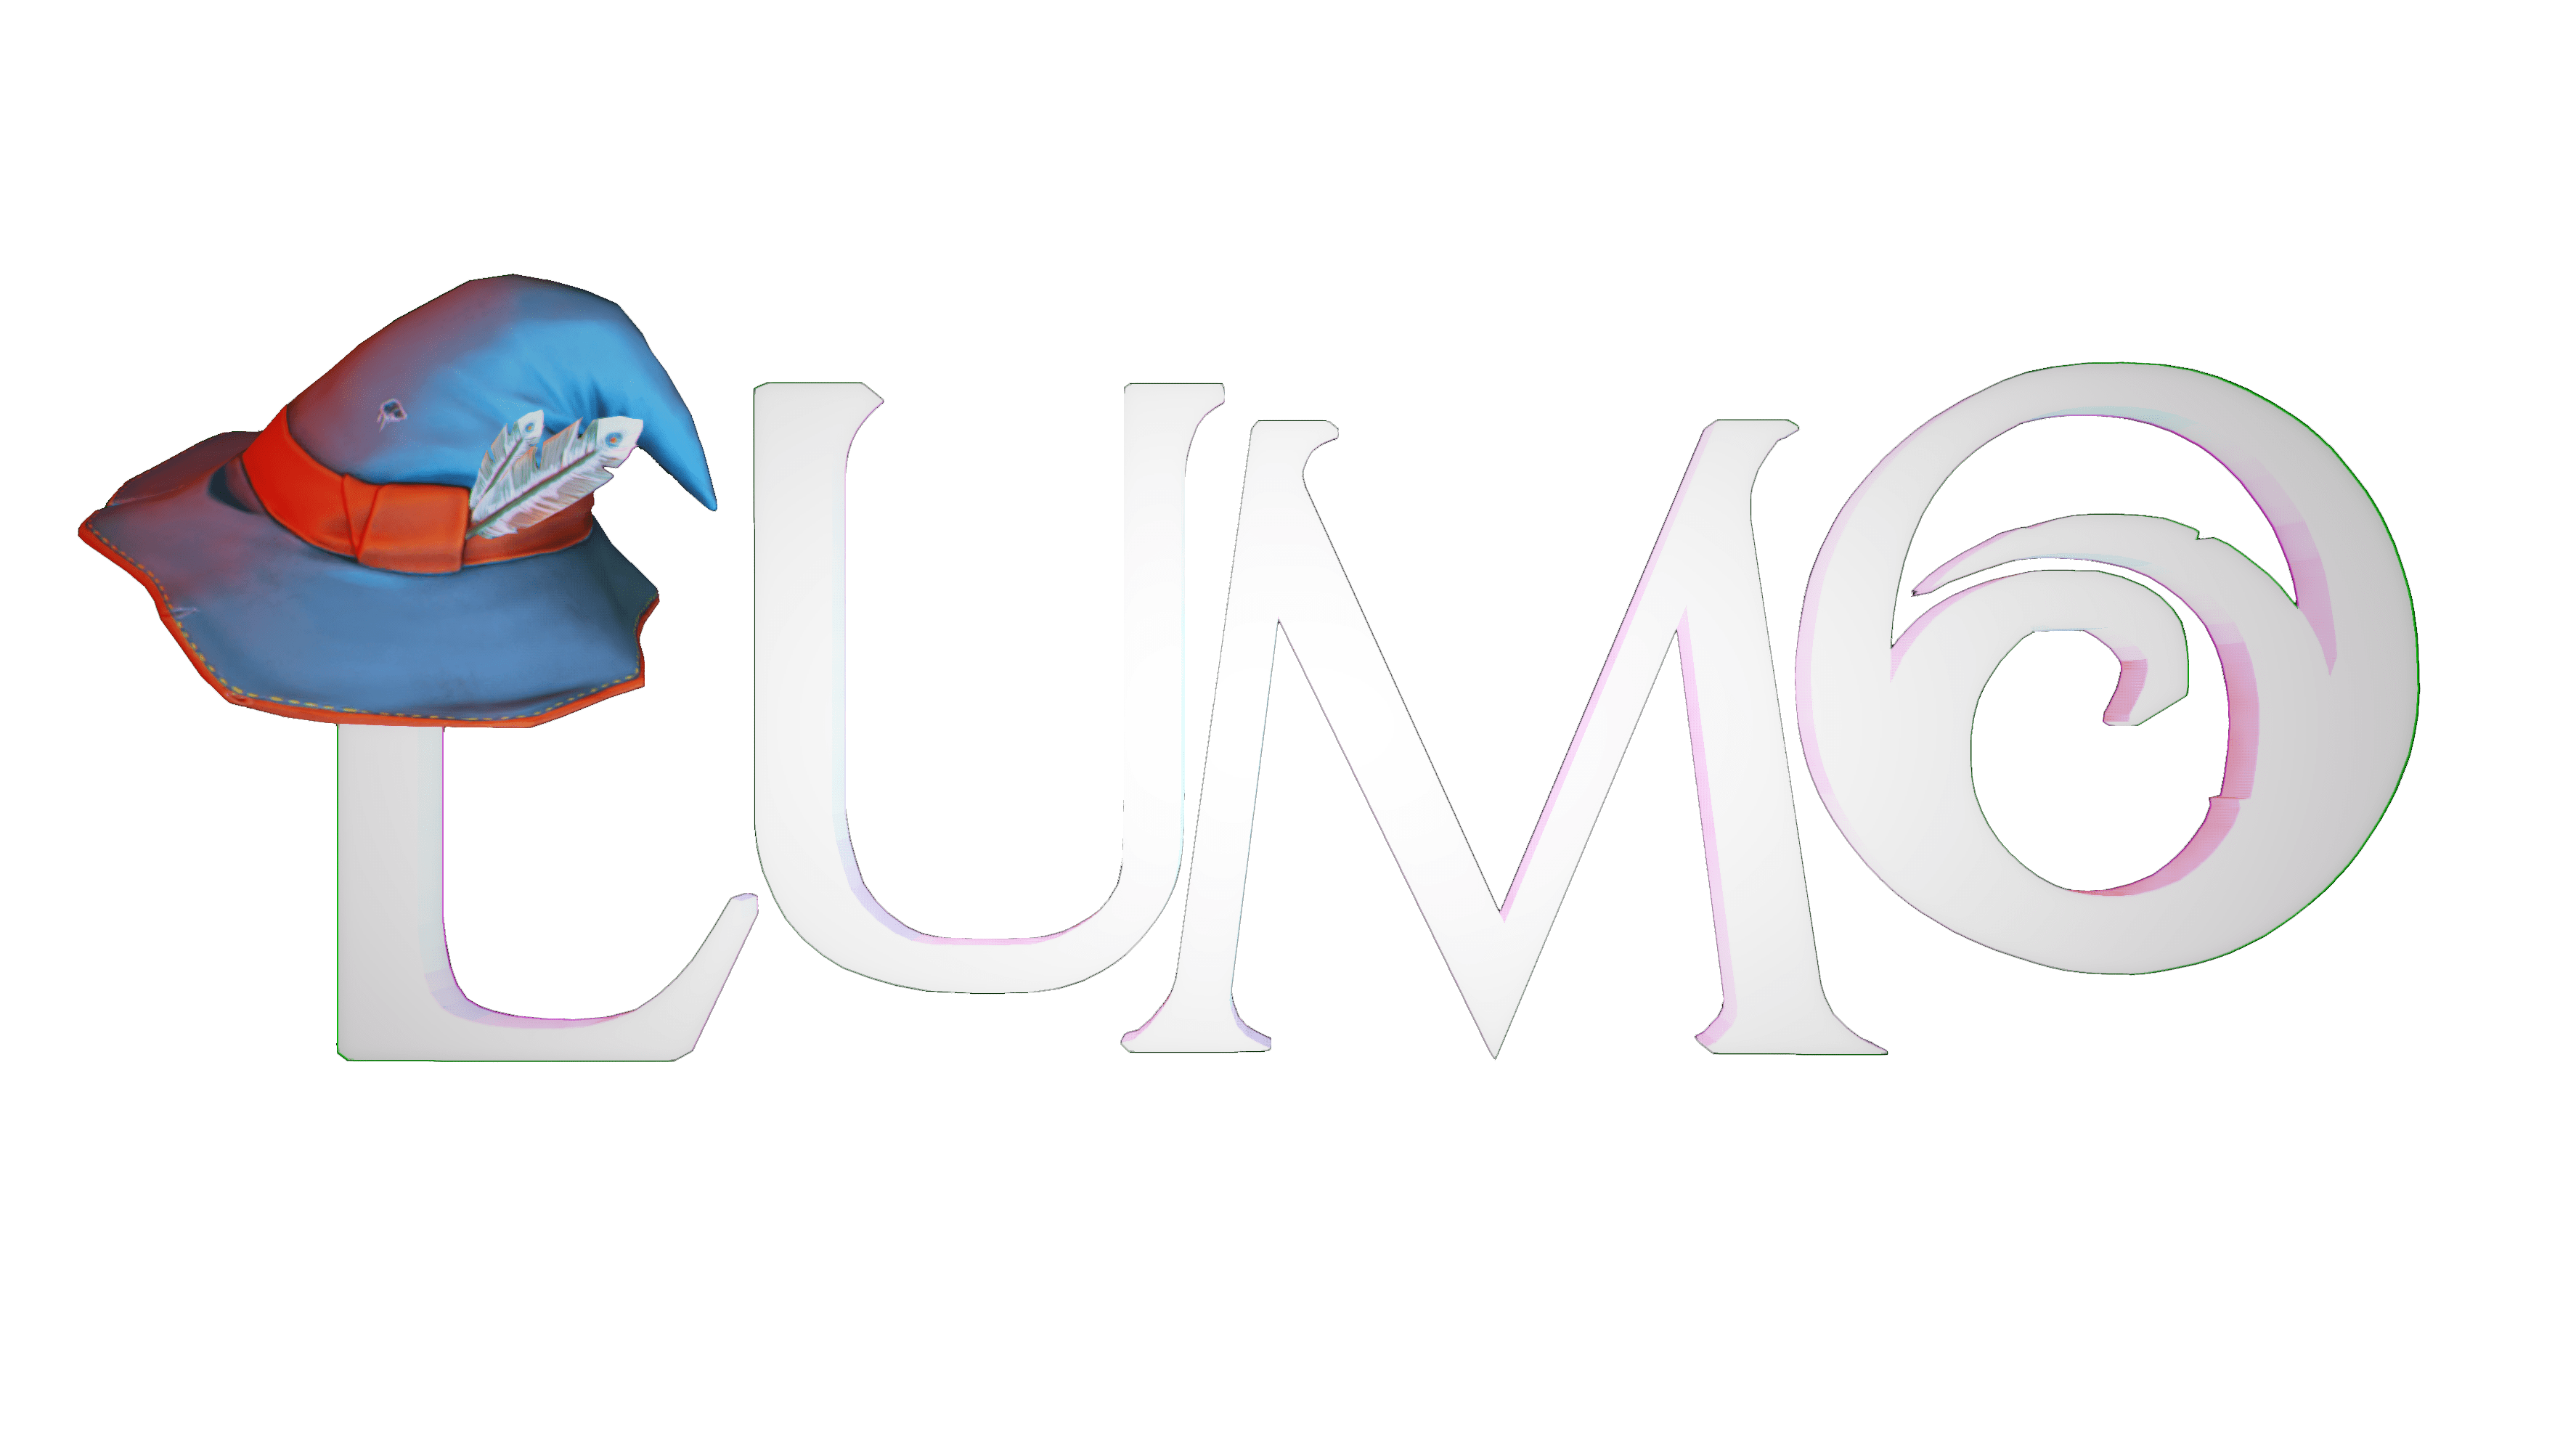 lumo stock